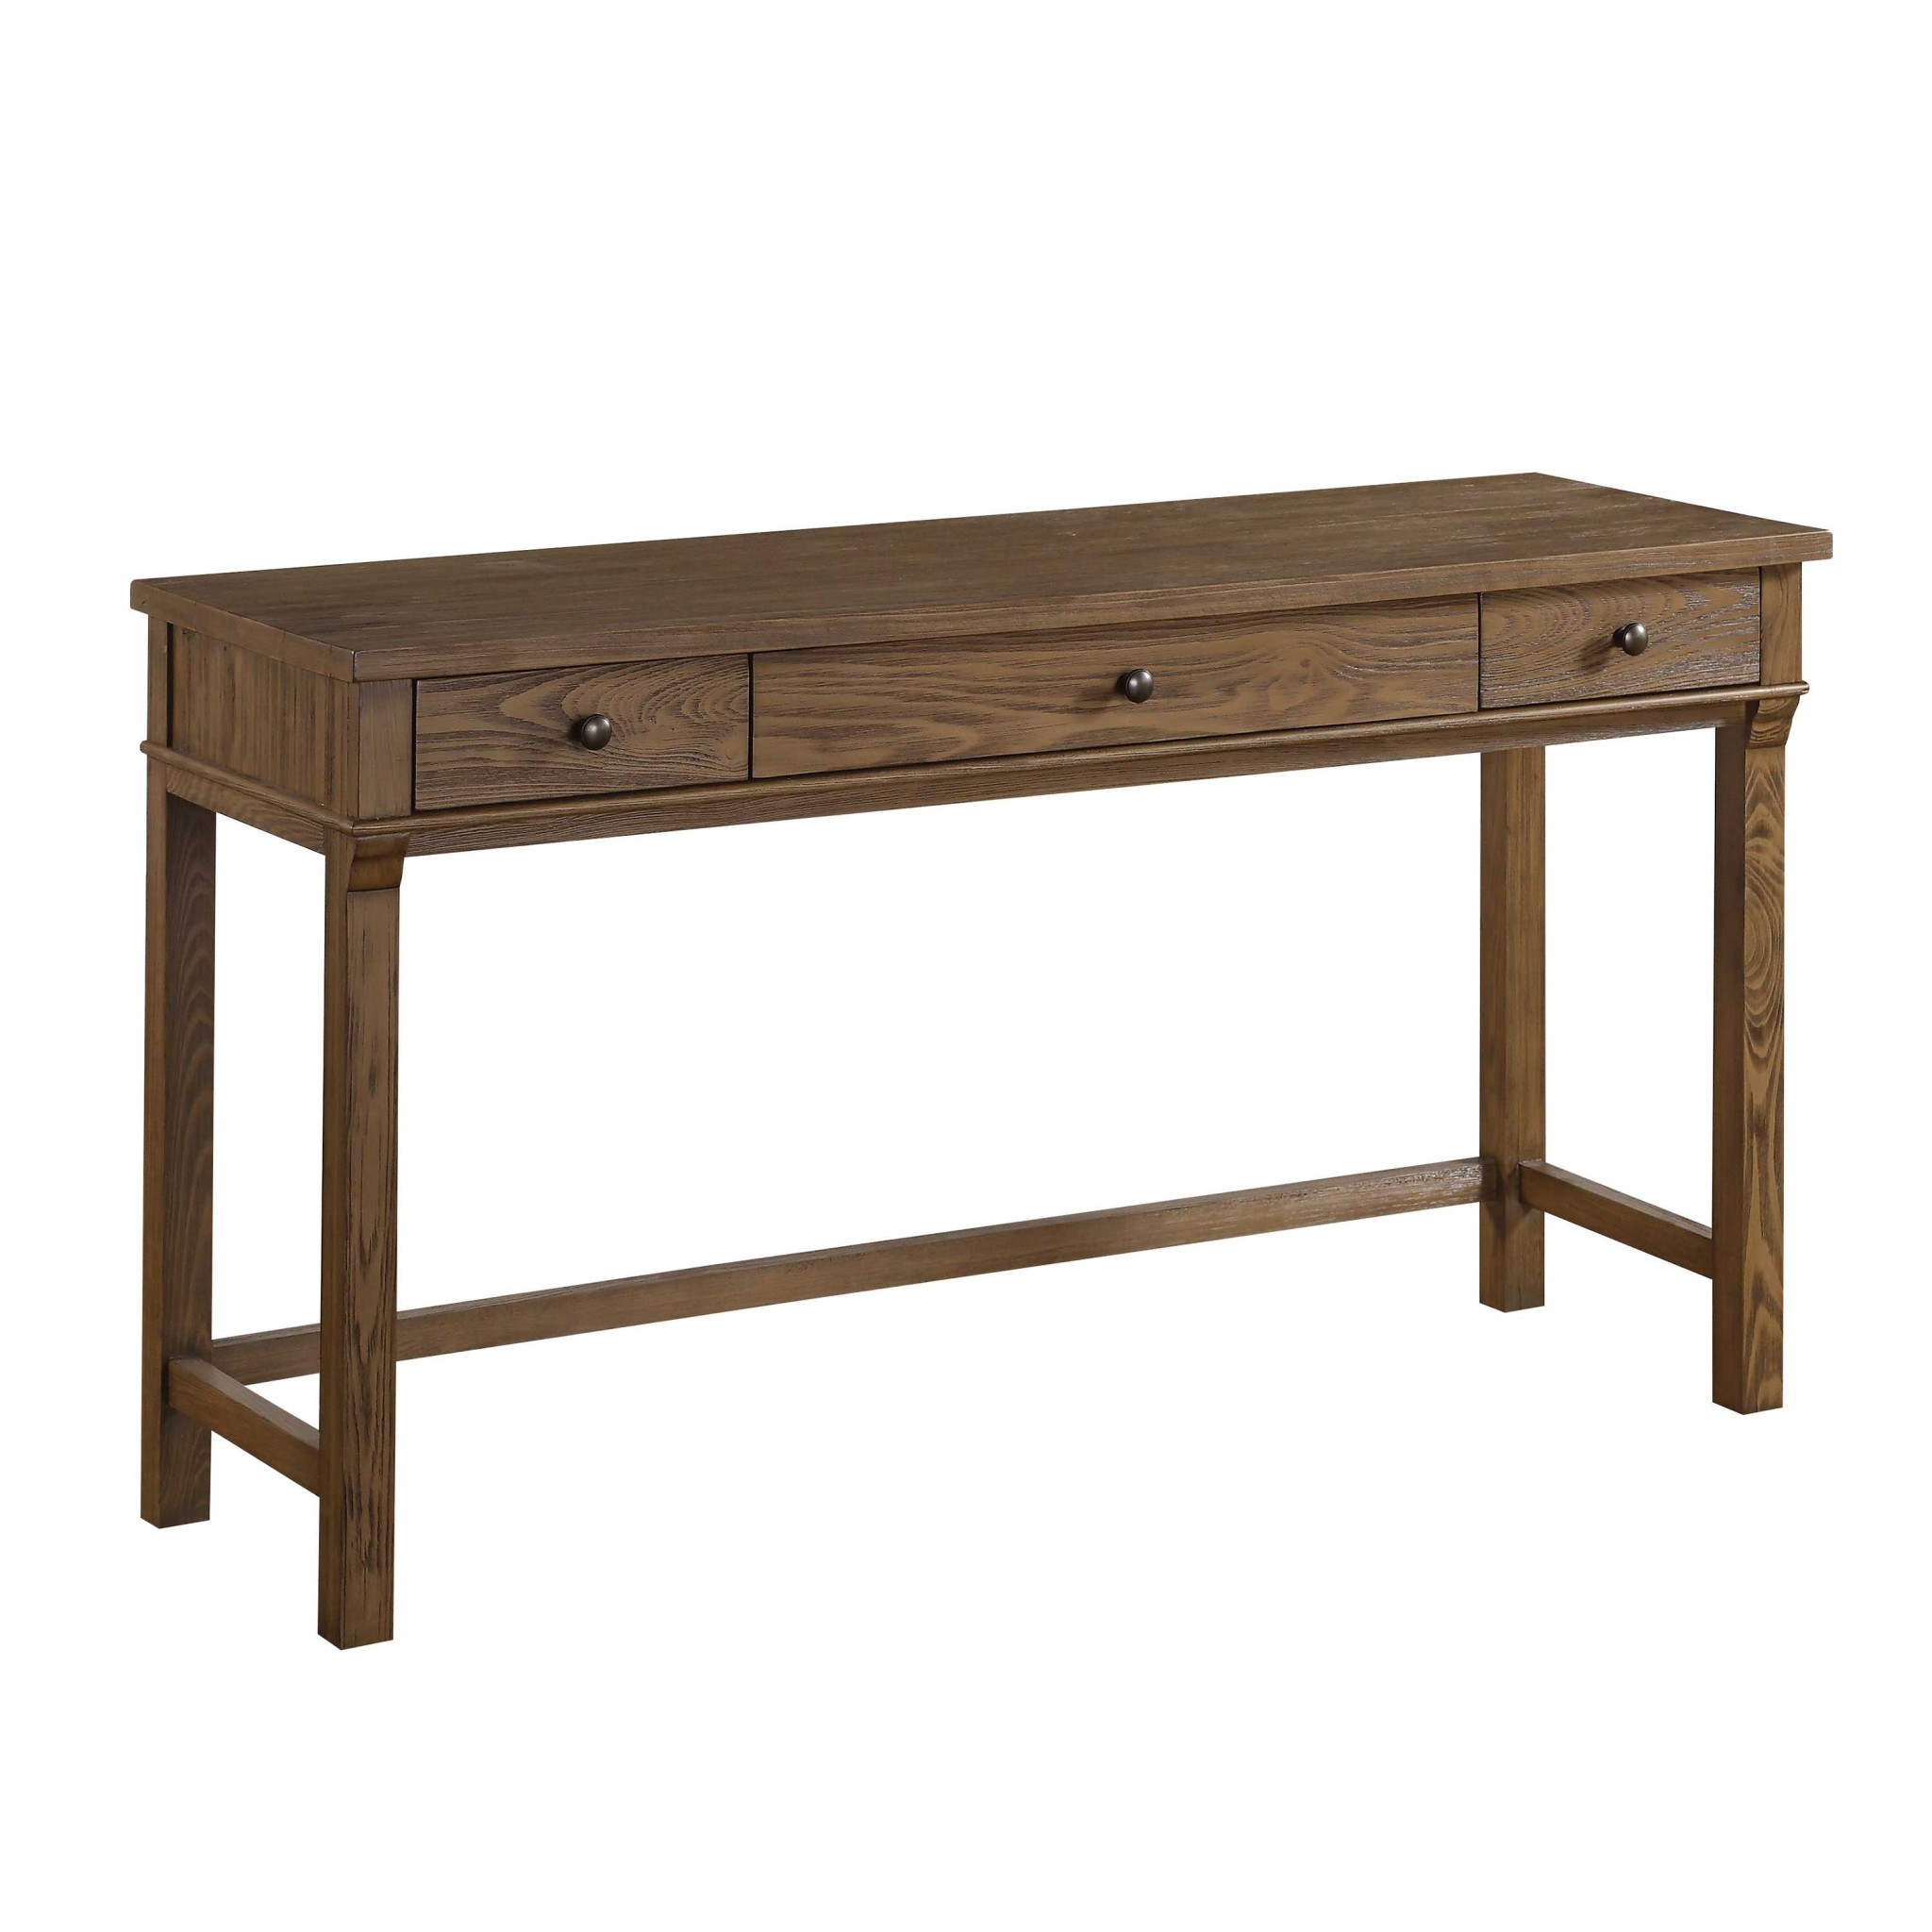 18" X 56" X 30" Reclaimed Oak Wood Desk